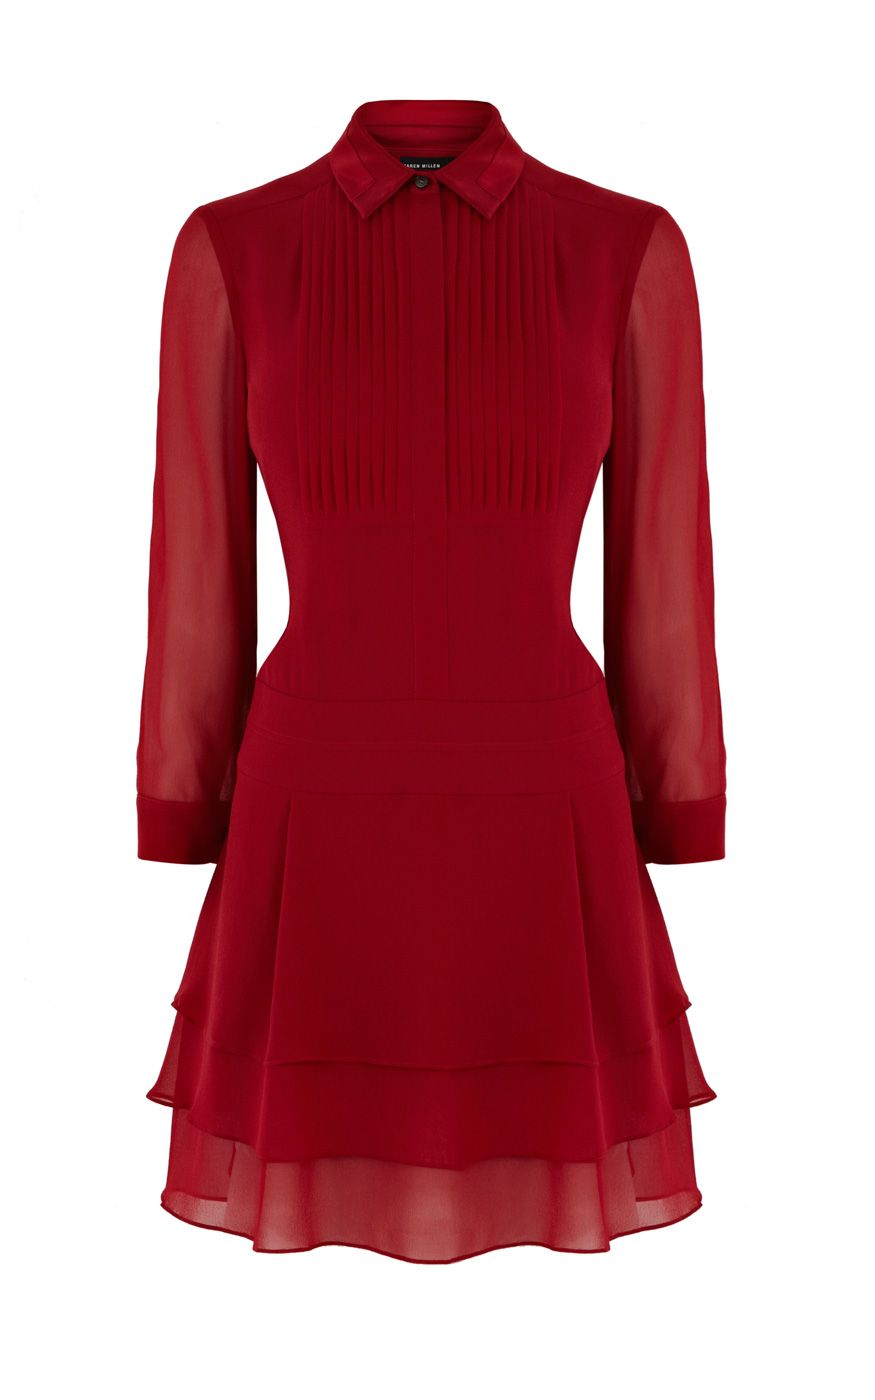  Karen  millen  Pintuck Detail Shirt  Dress  in Red Lyst